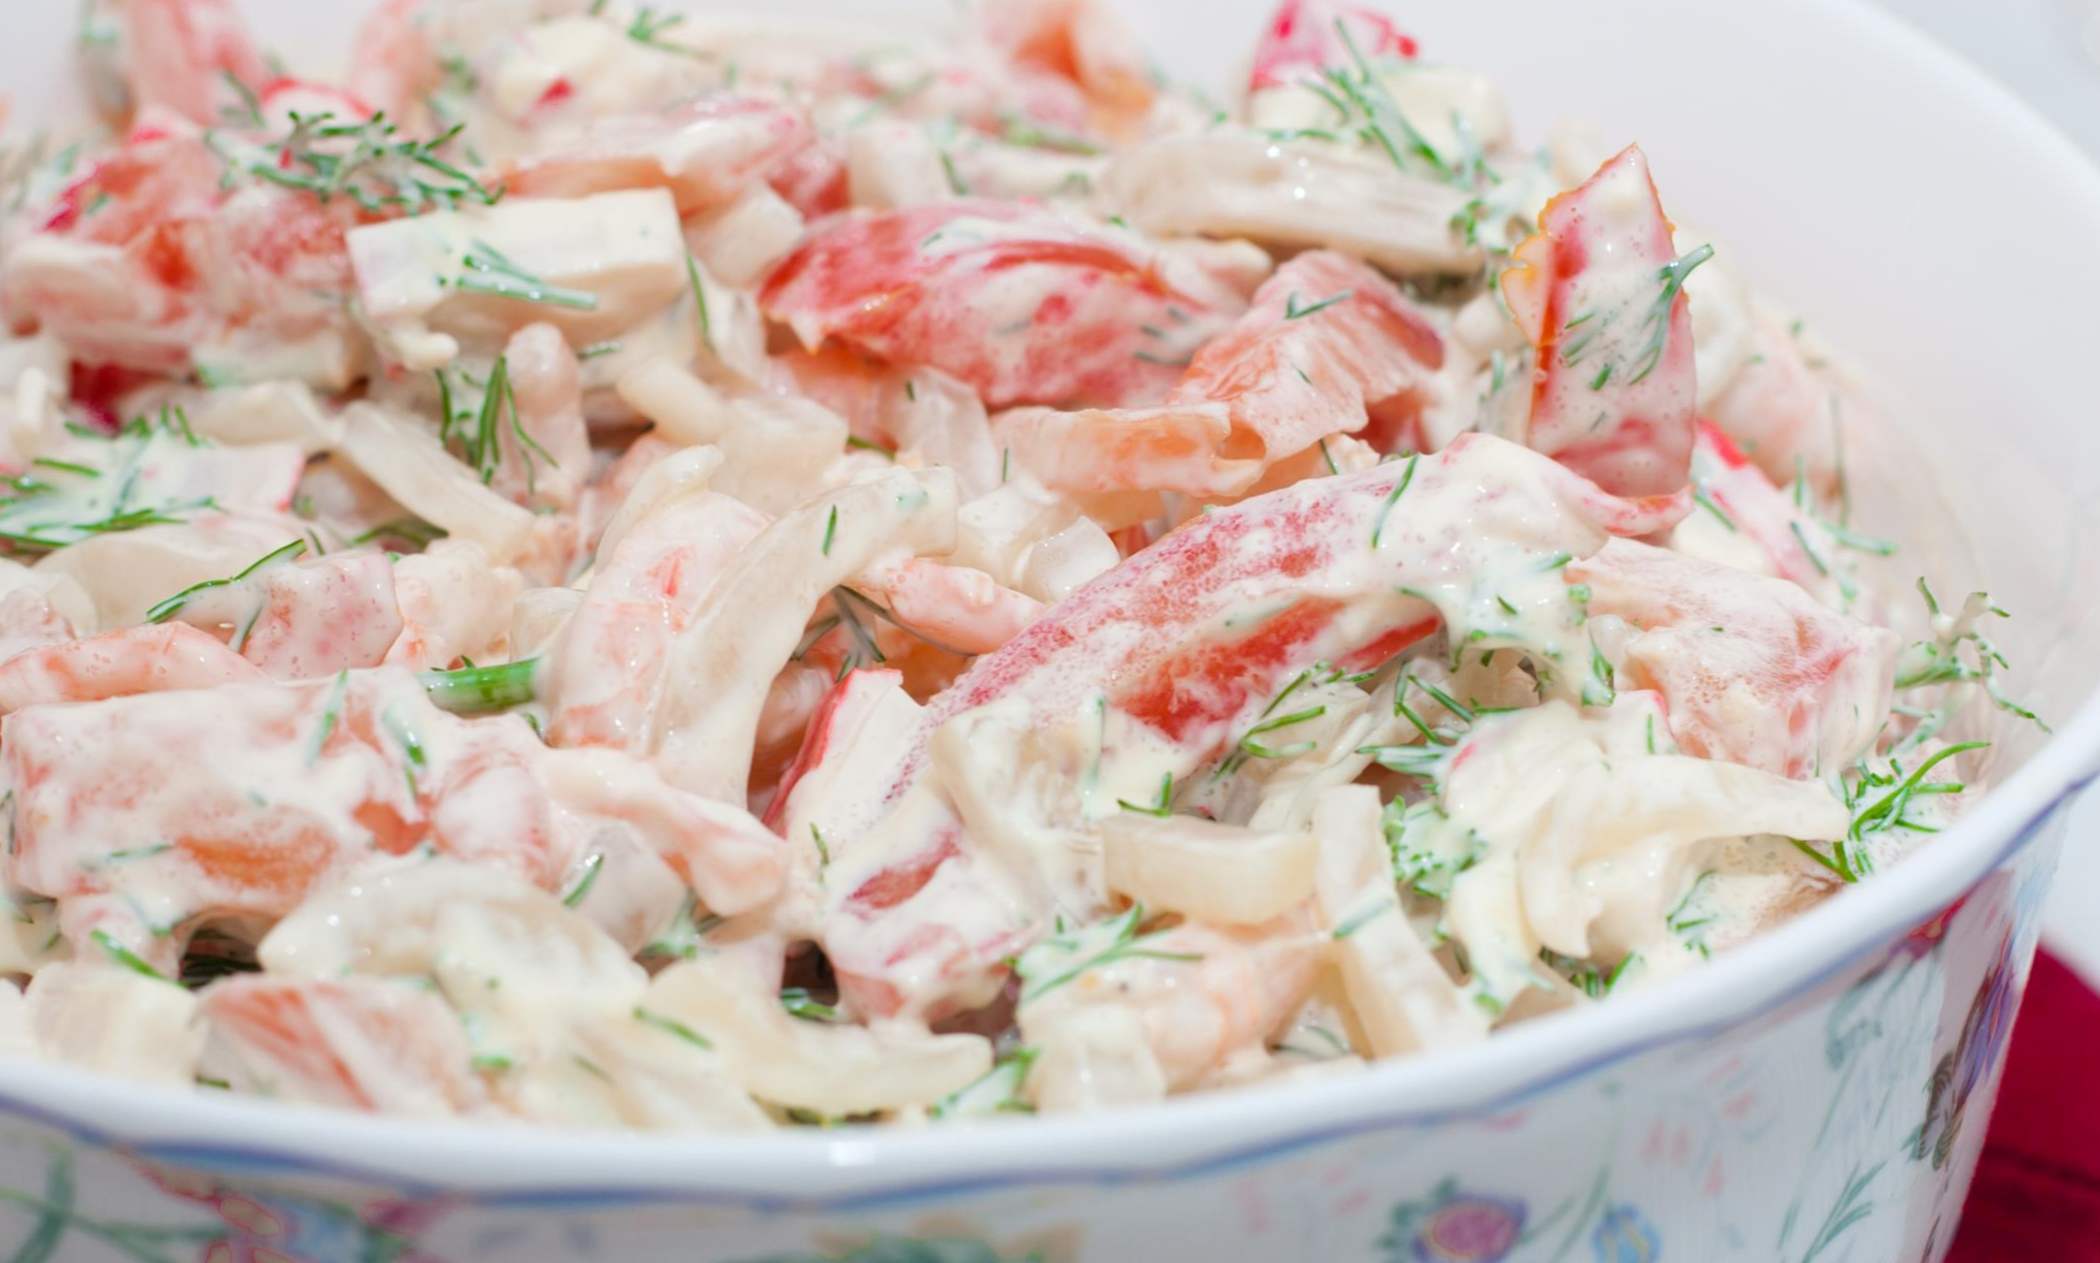 Salata s škampima i rakovima - 7 ukusnih recepata